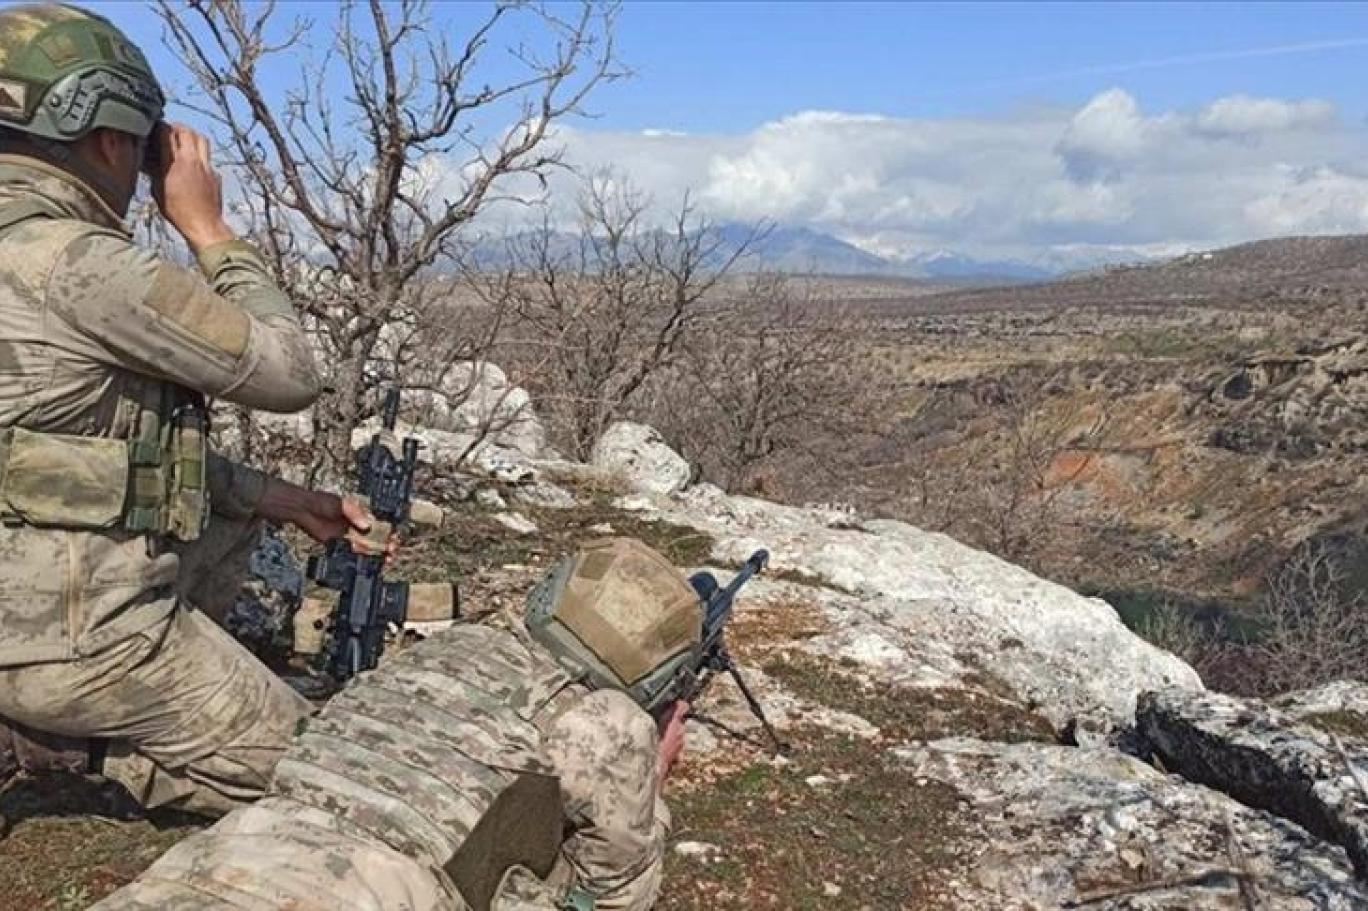 Թուրքիայի «Մագիլ-կողպեք» ռազմական օպերացիայի ժամանակ հերթական թուրք զինվորն է սպանվել